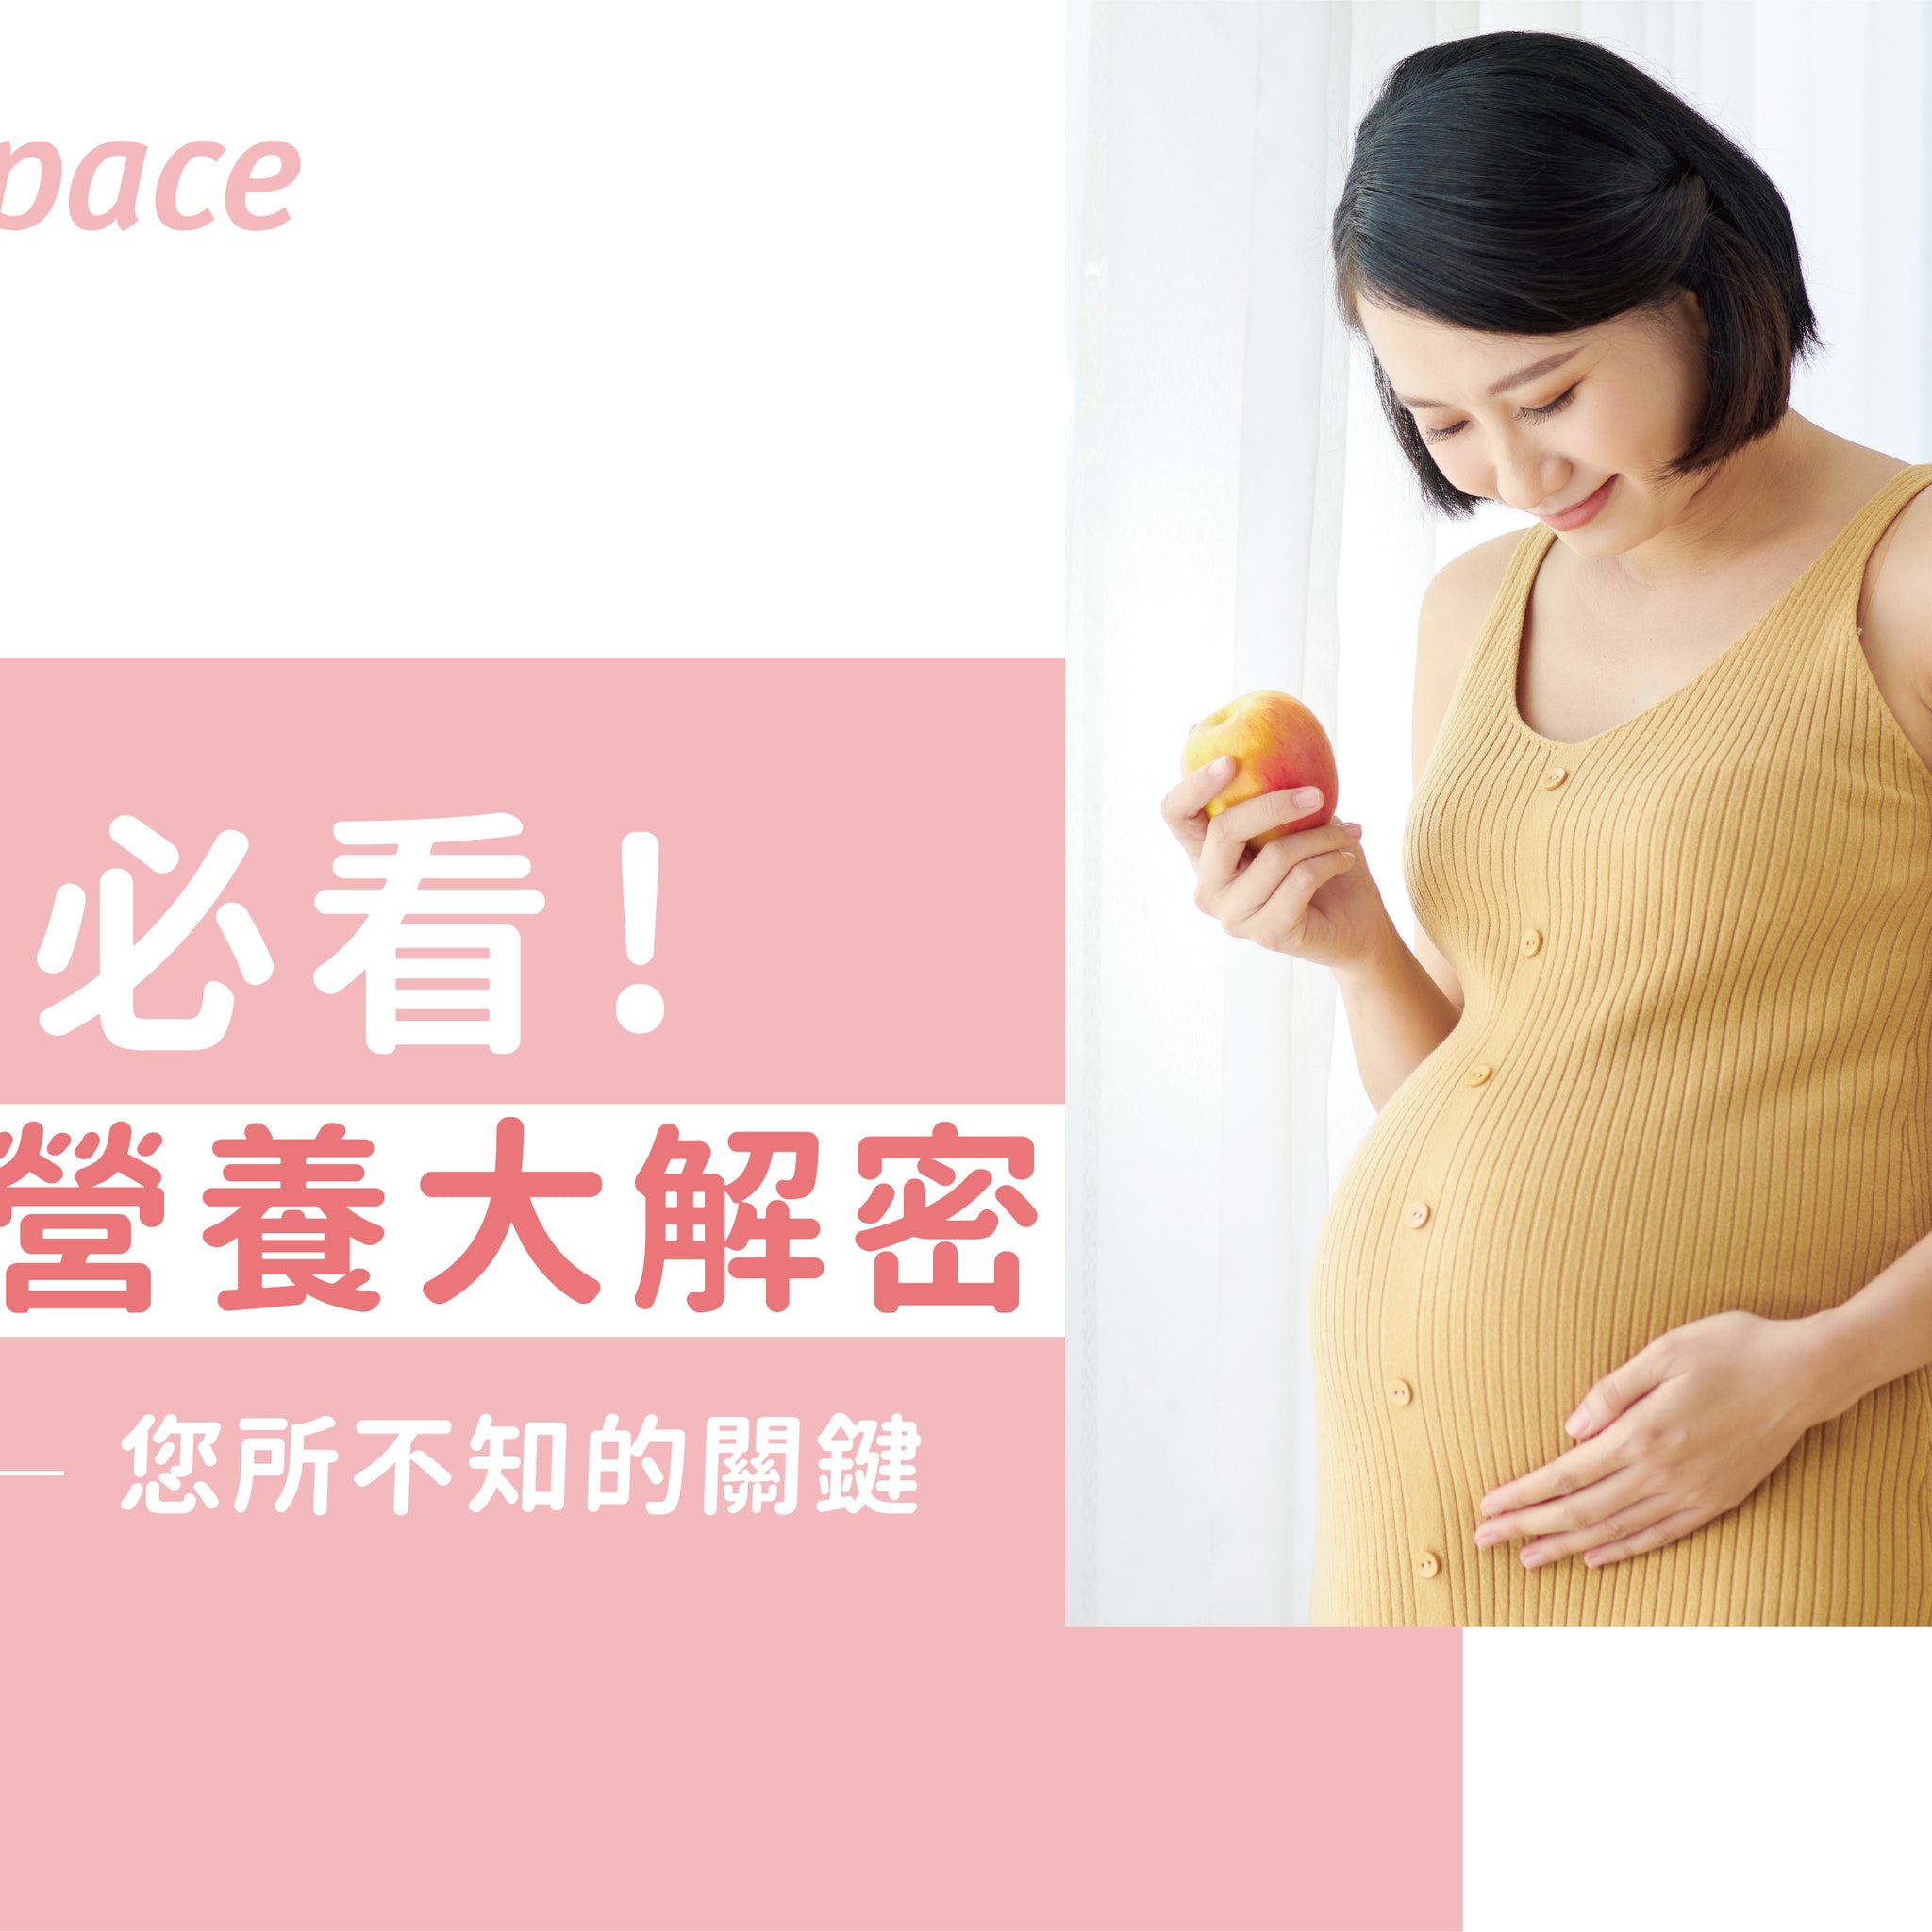 懷孕該補充哪些營養？孕婦必看! 孕期營養大解密 - 益生菌專家 - 澳洲 Life-Space